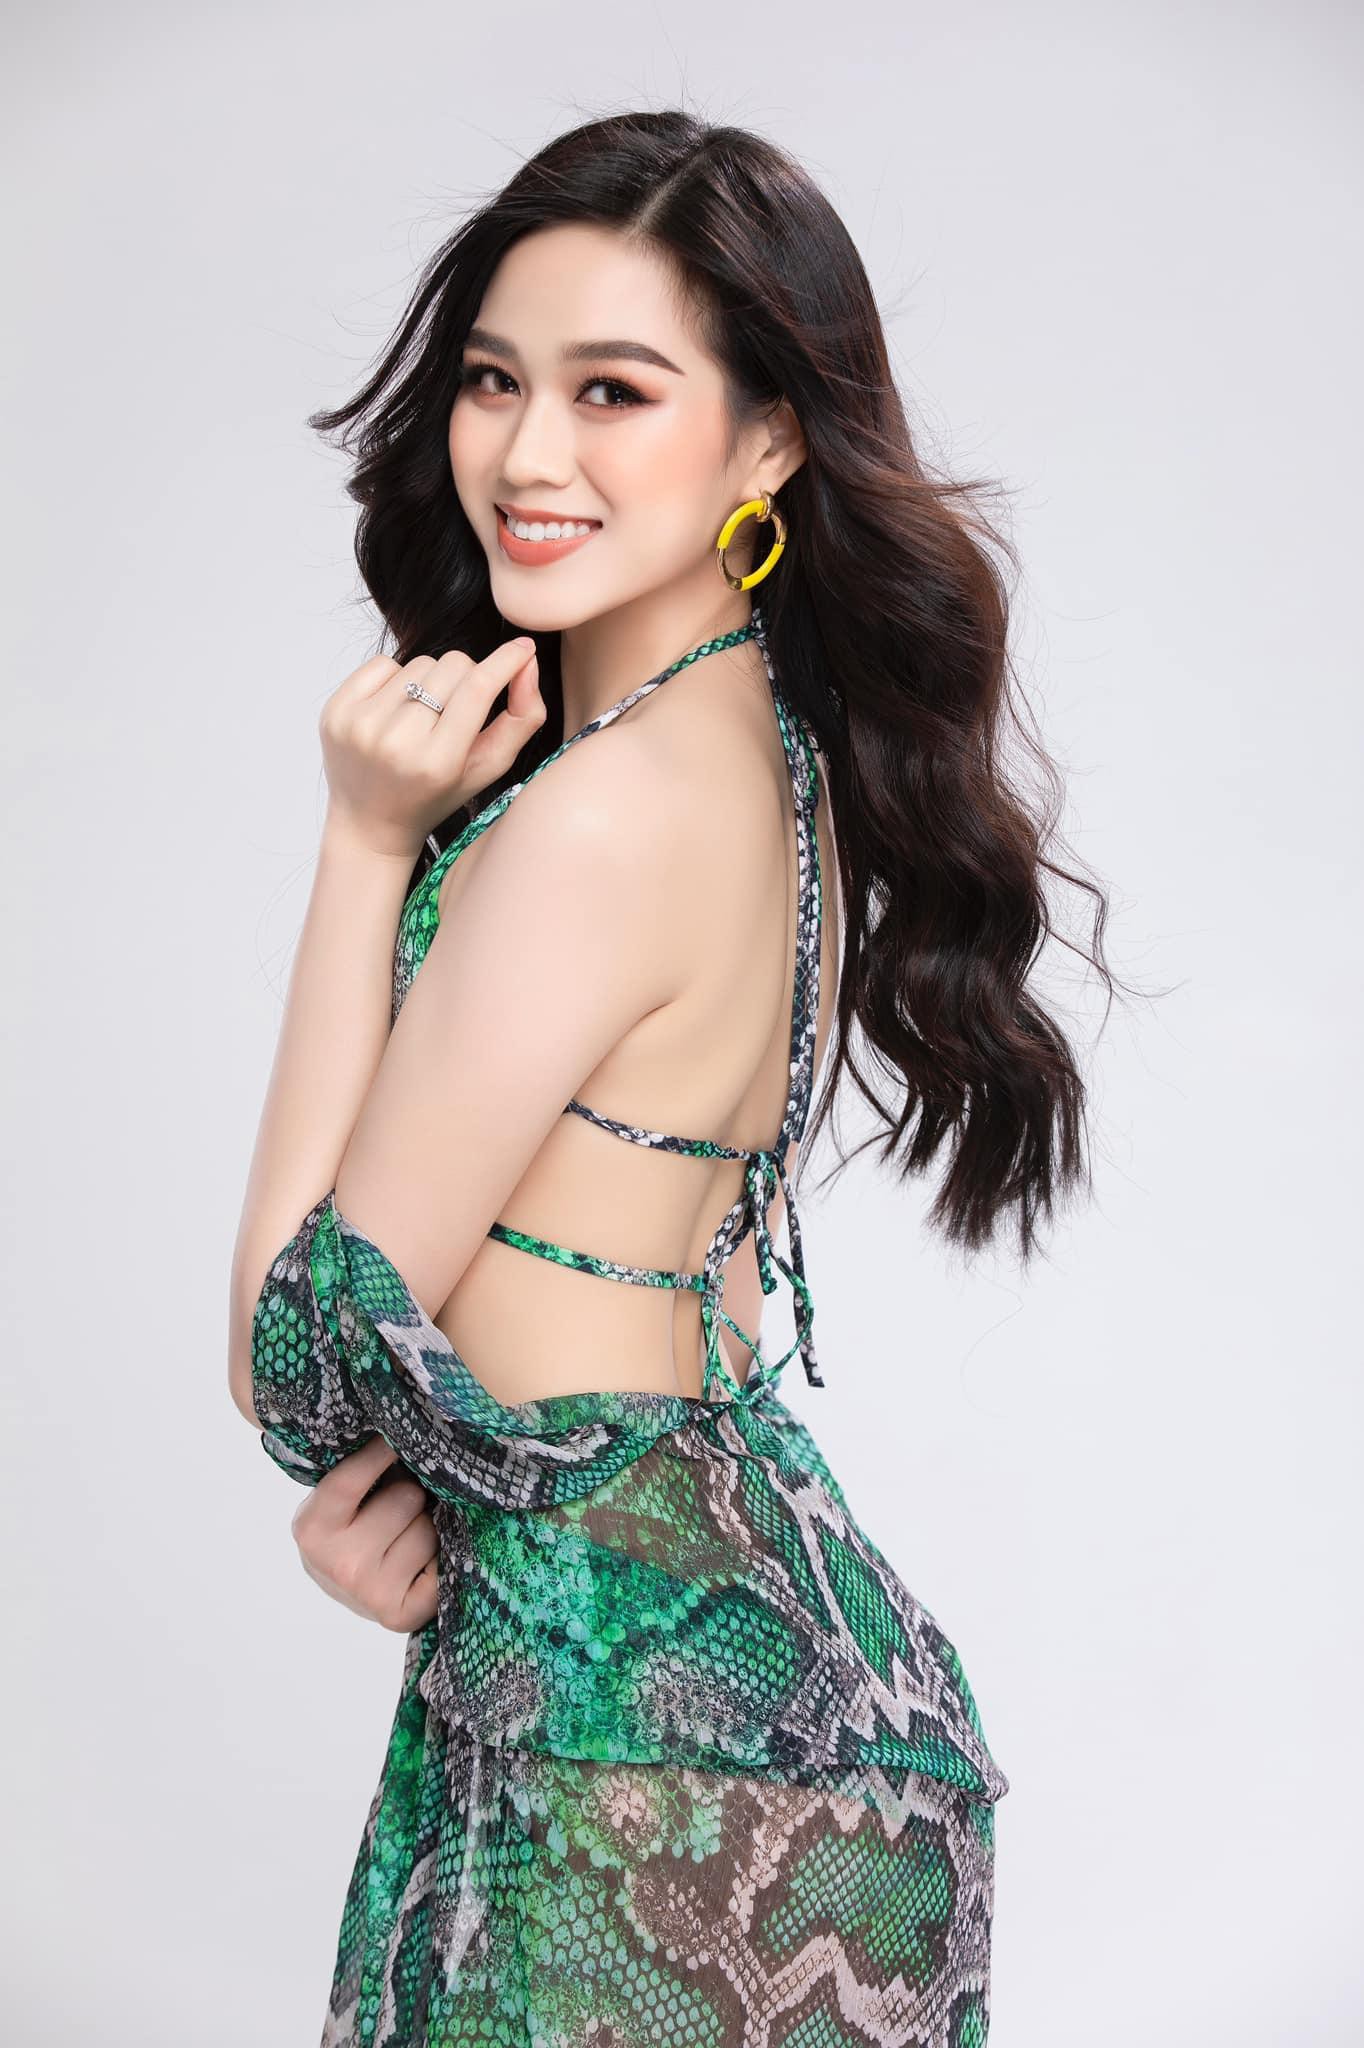 Hoa hậu Đỗ Thị Hà lần đầu tung ảnh bikini sau 6 tháng đăng quang ảnh 5